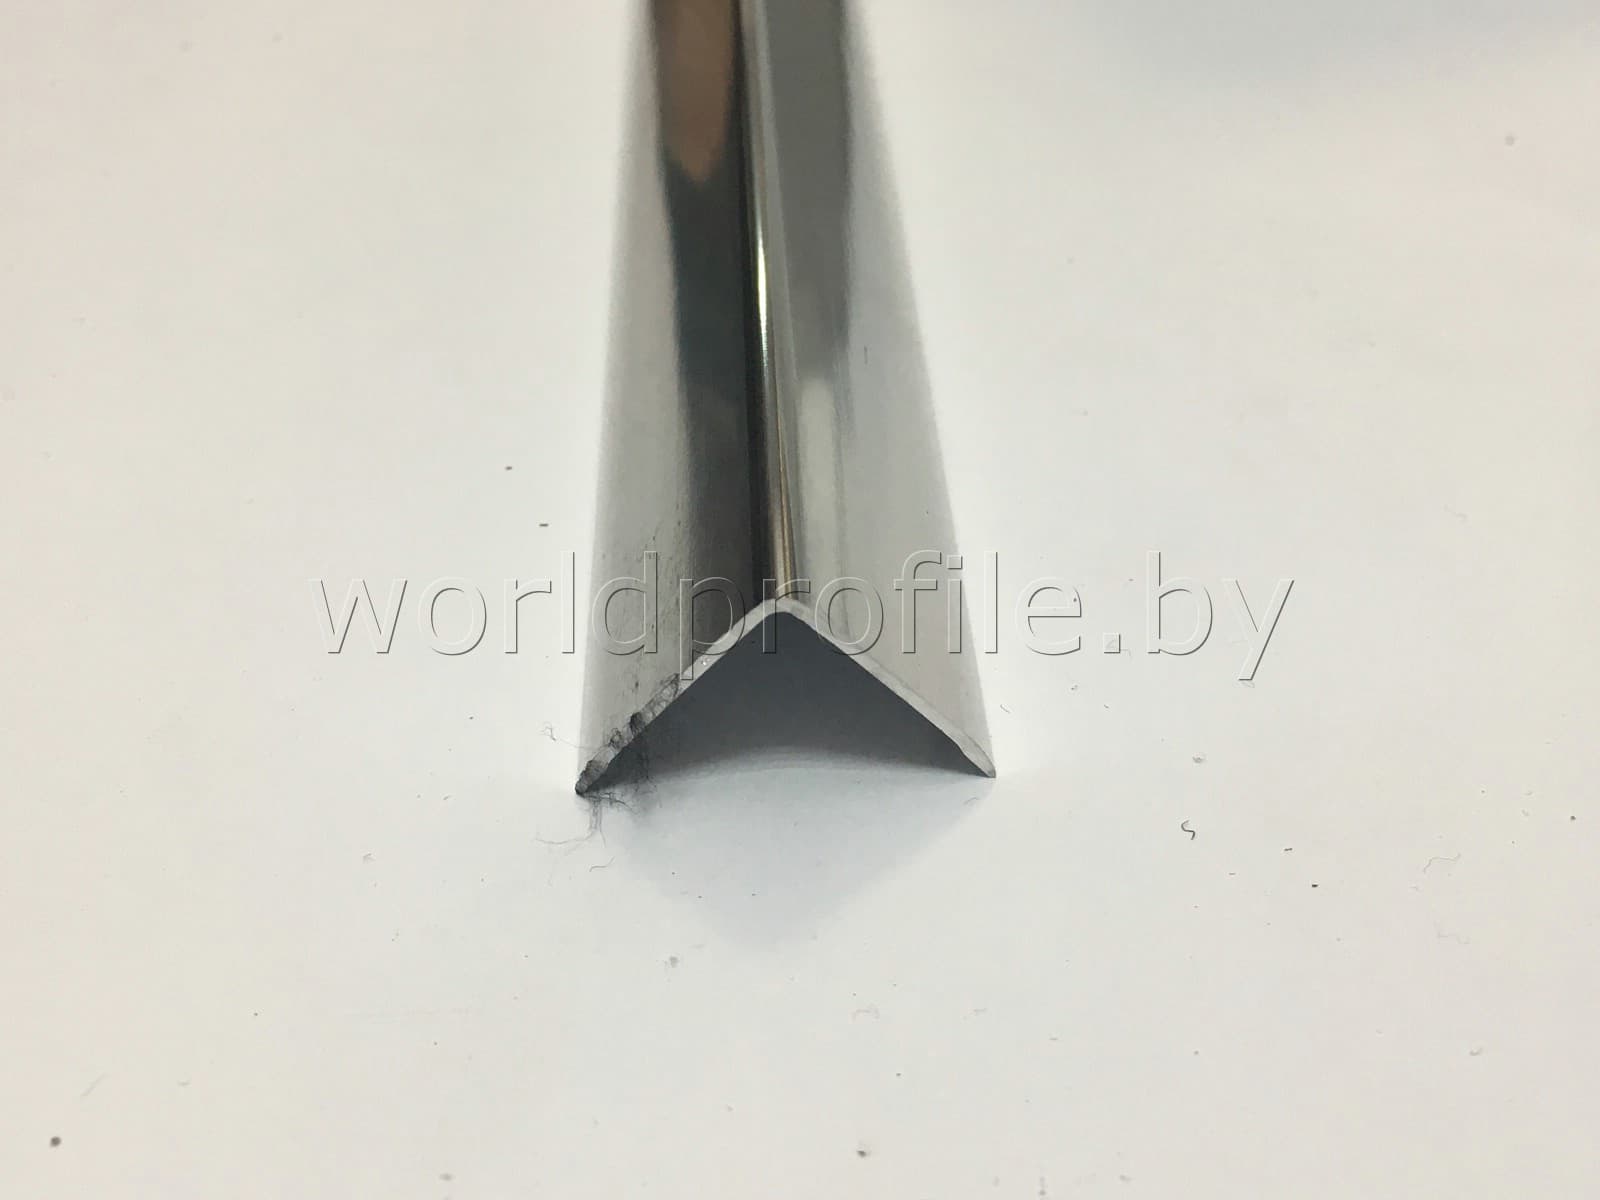 Уголок алюминиевый 20х20х1 (2,7 м), цвет серебро глянец